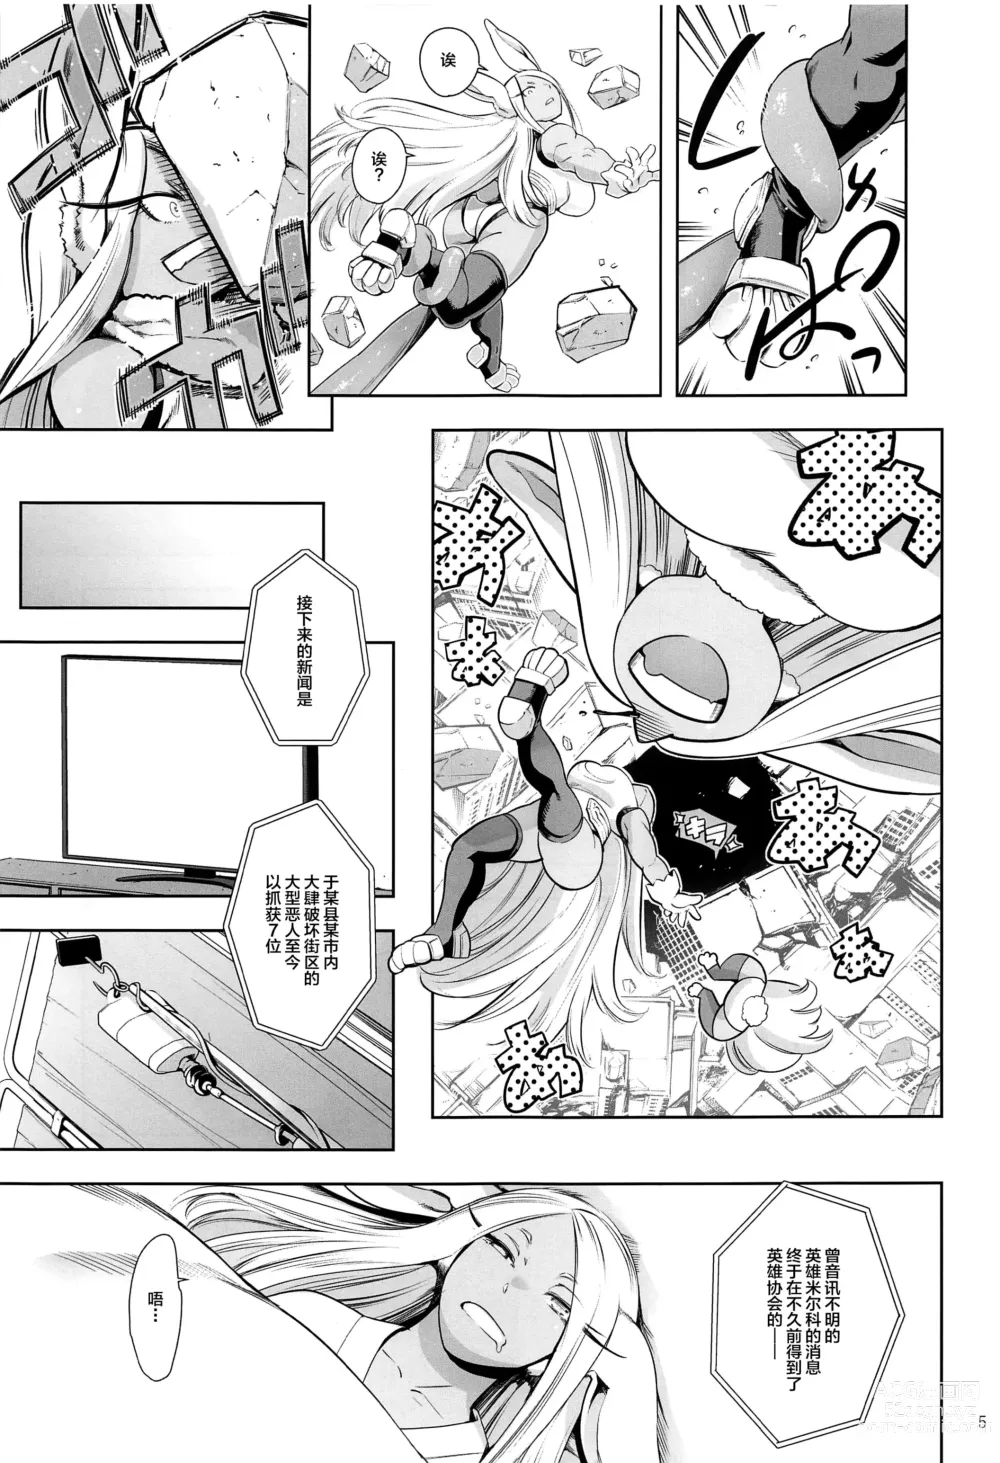 Page 4 of doujinshi Goshimei wa Usagi desu ka?